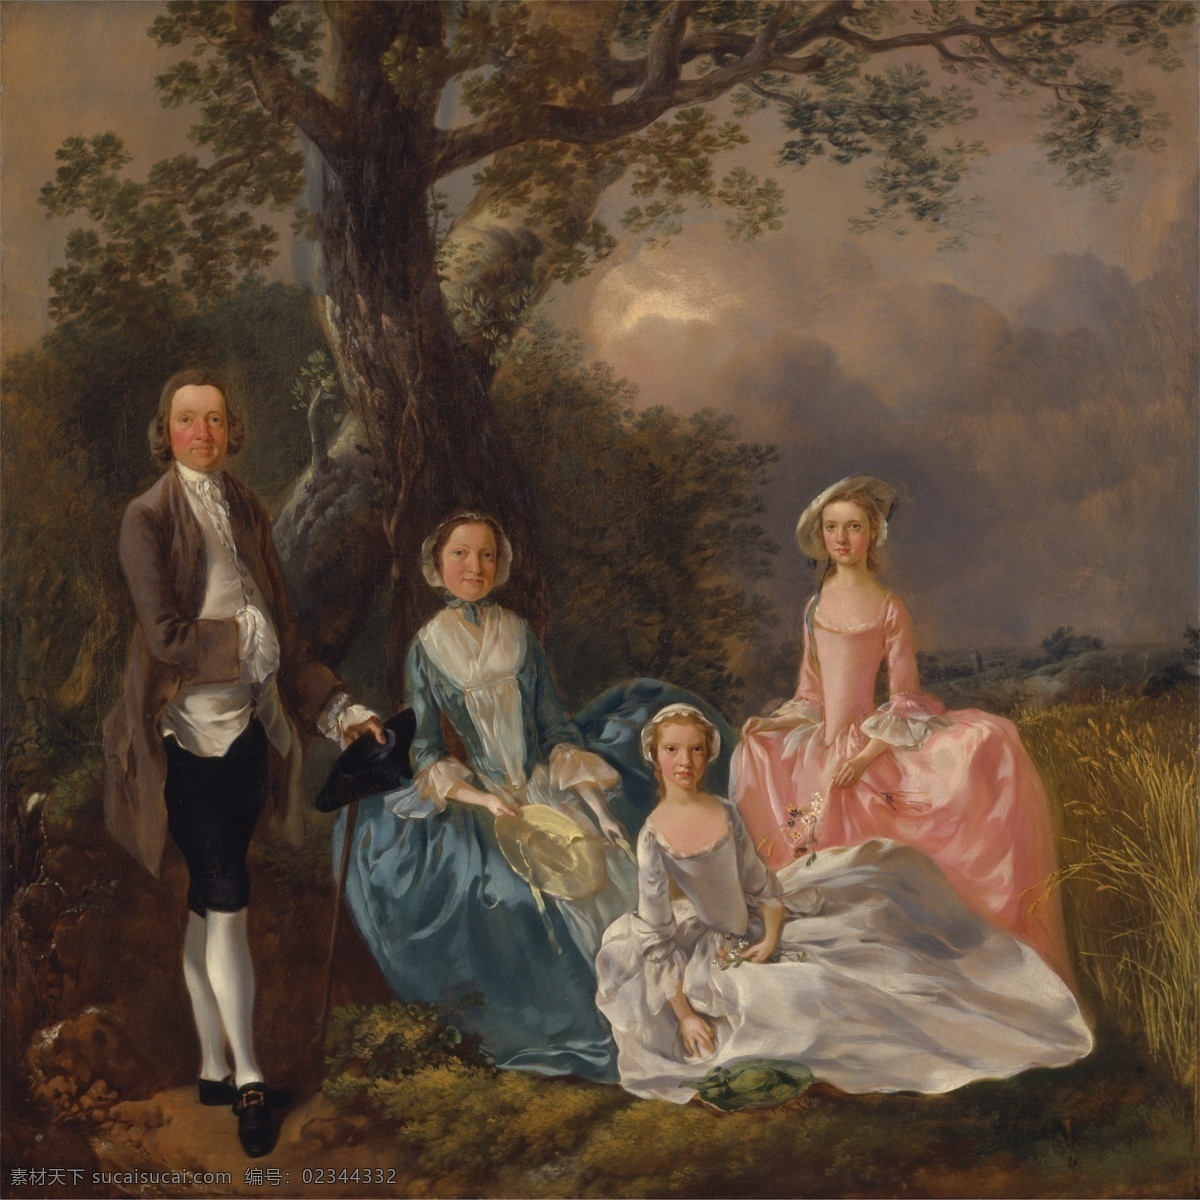 一家四口 托马斯 庚 斯 伯 罗 作品 英国画家 洛可可画派 一对 夫妇 他们 两个女儿 野外 古典油画 油画 绘画书法 文化艺术